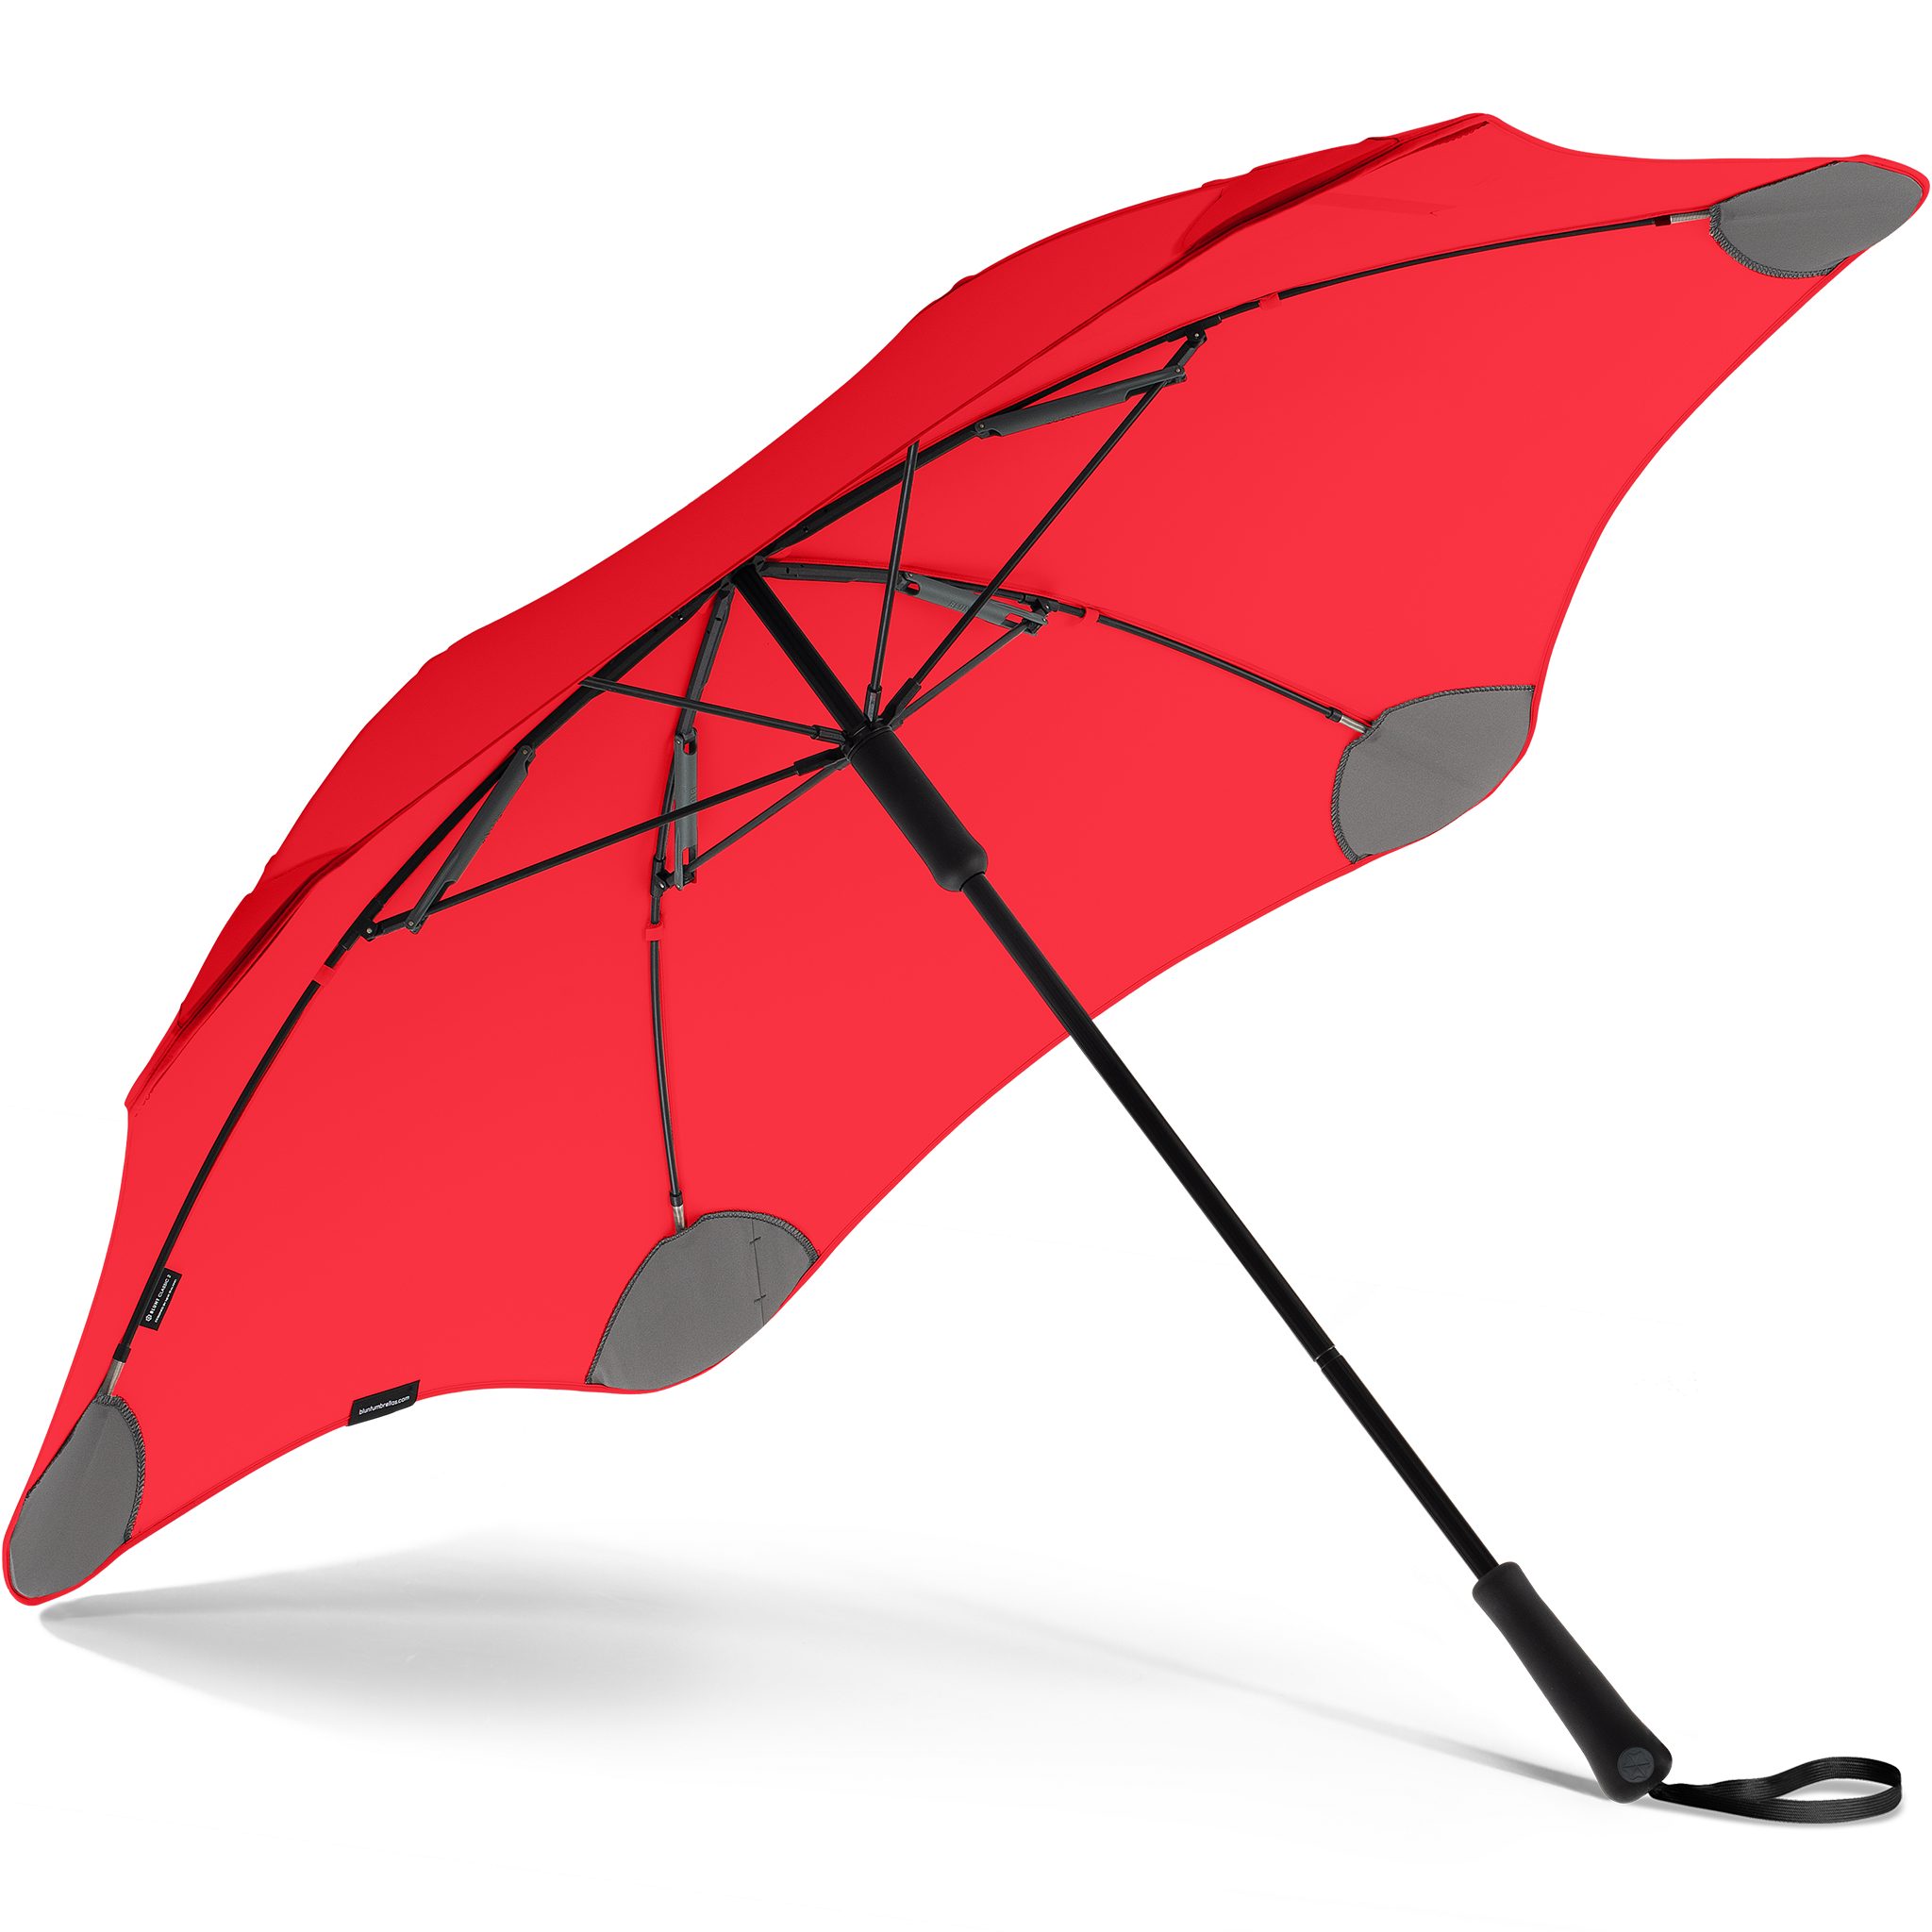 Technologie, Stockregenschirm Blunt einzigartige rot herausragende patentierte Classic, Silhouette